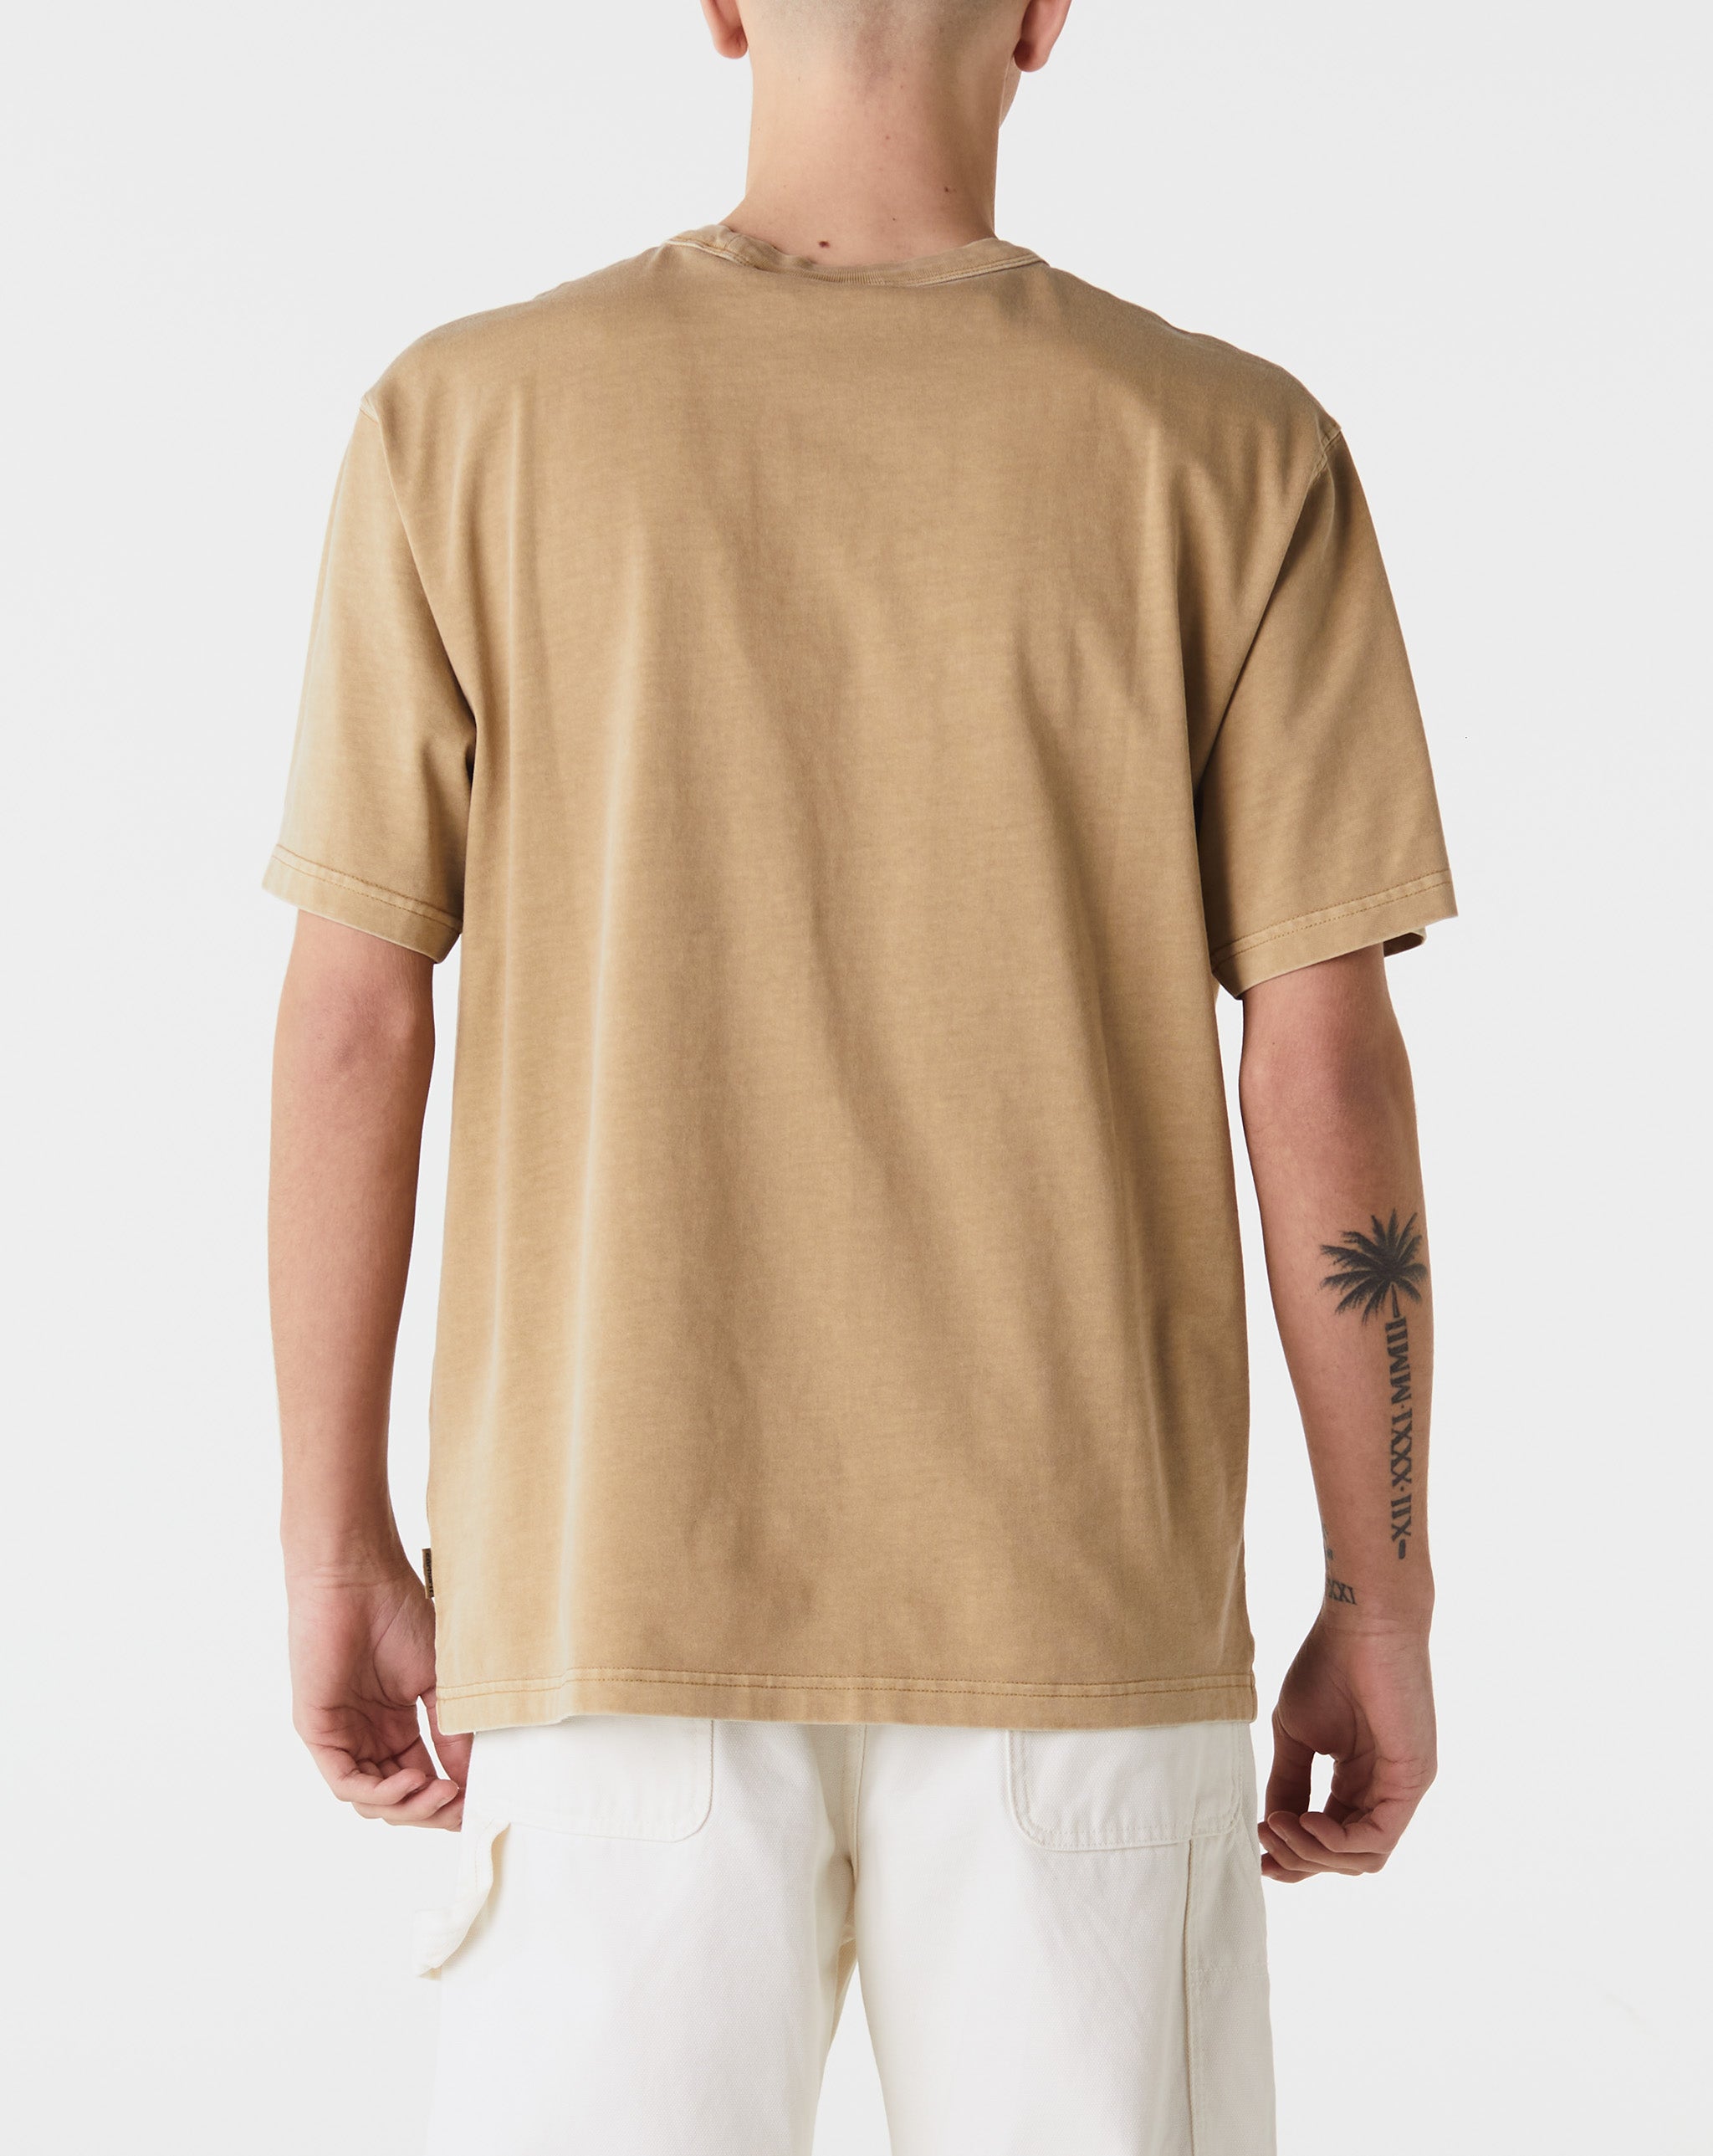 Carhartt WIP Taos T-Shirt  - Cheap Cerbe Jordan outlet